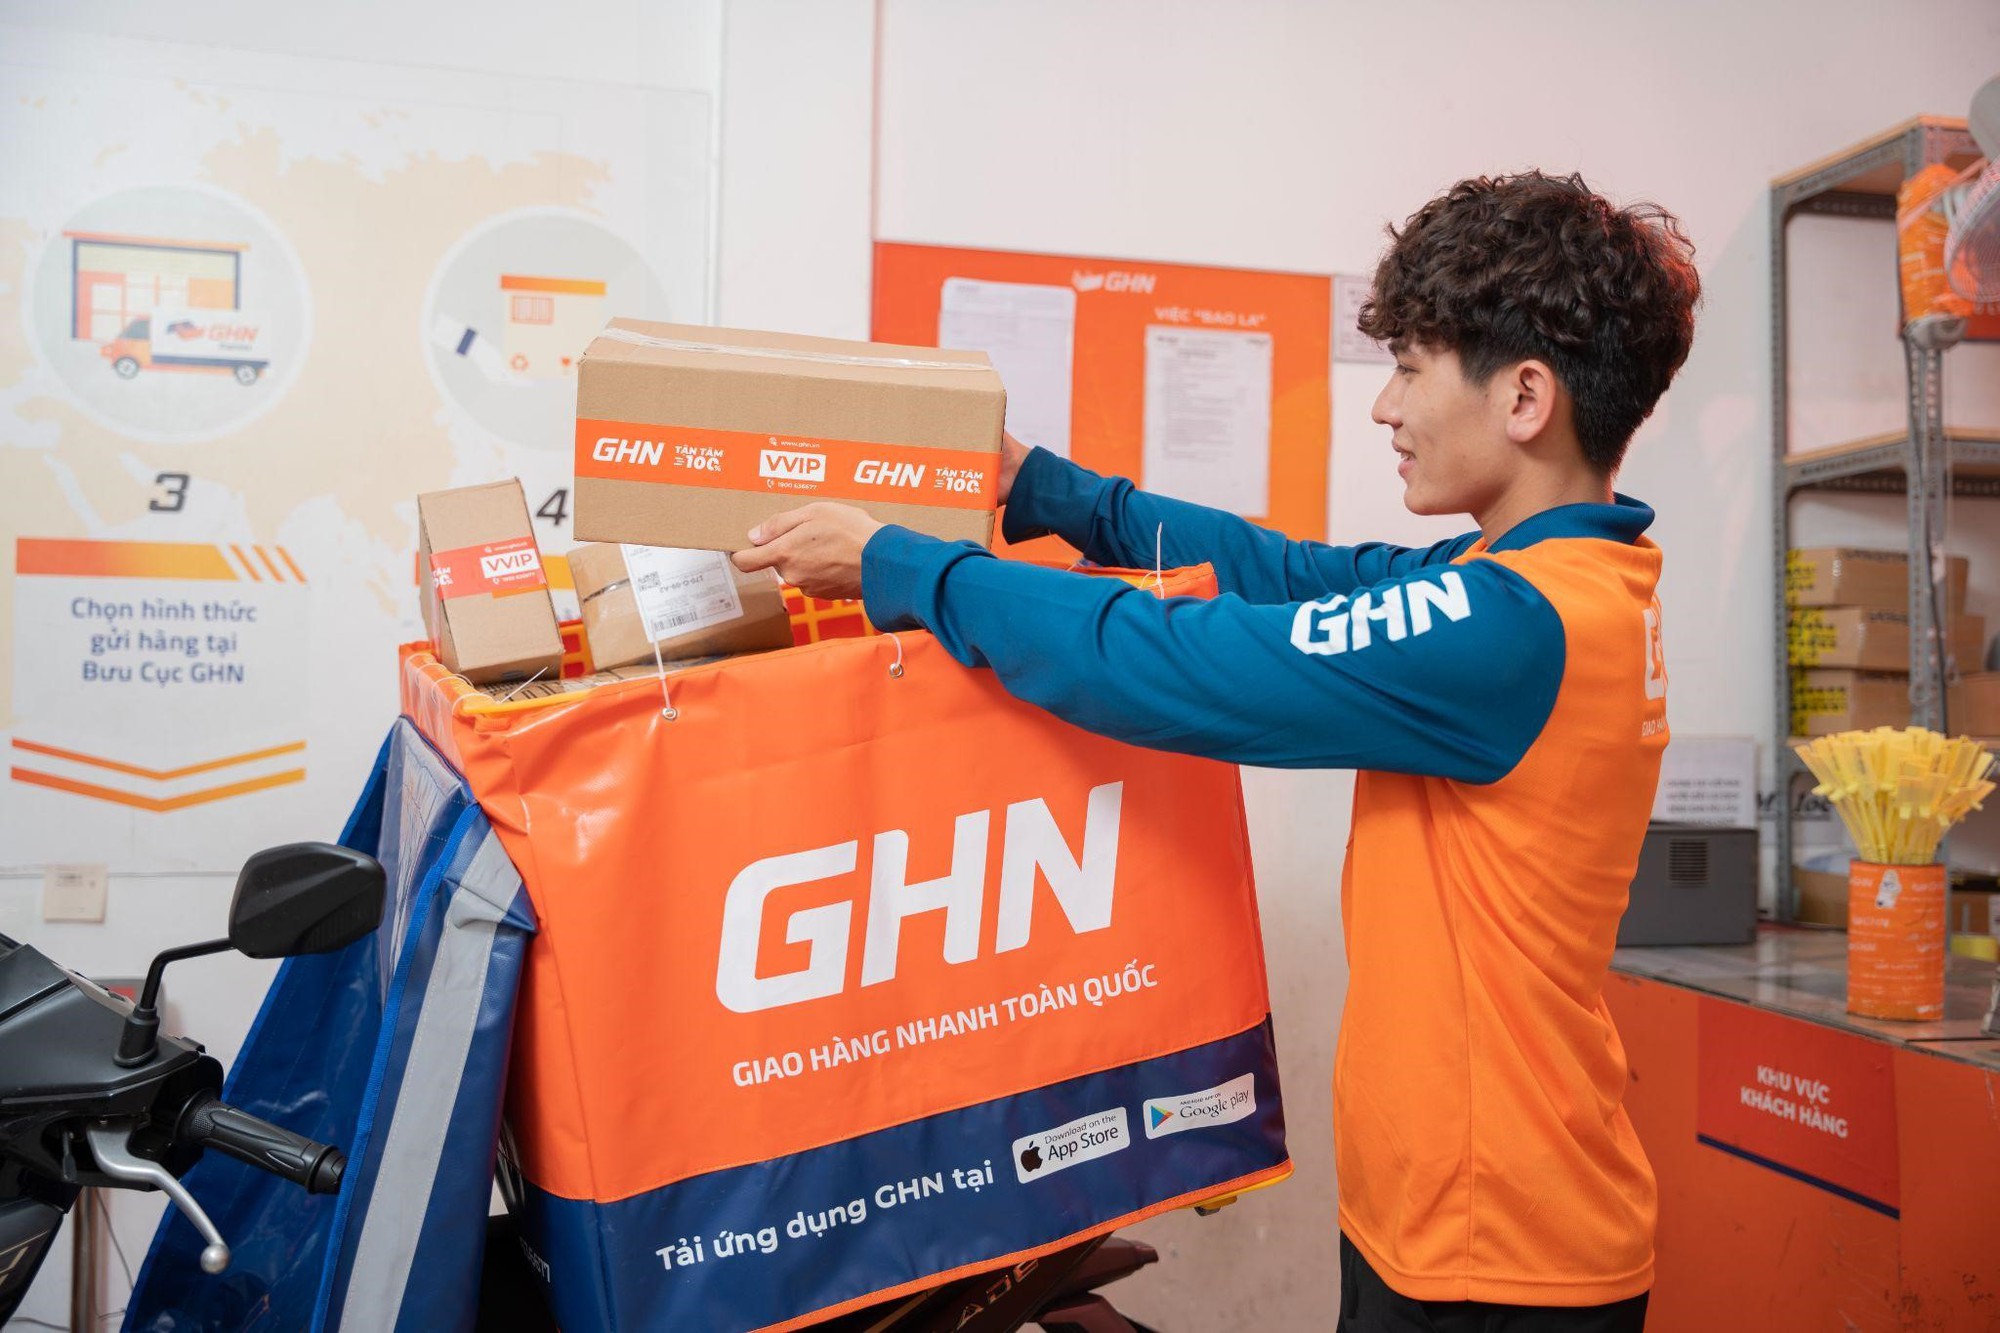 Kho chia chọn triệu USD của GHN tại Hà Nội: Công nghệ tự cân đo trọng lượng, kích thước và phân loại kiện hàng, xử lý tới 3,5 triệu đơn/ngày - Ảnh 3.